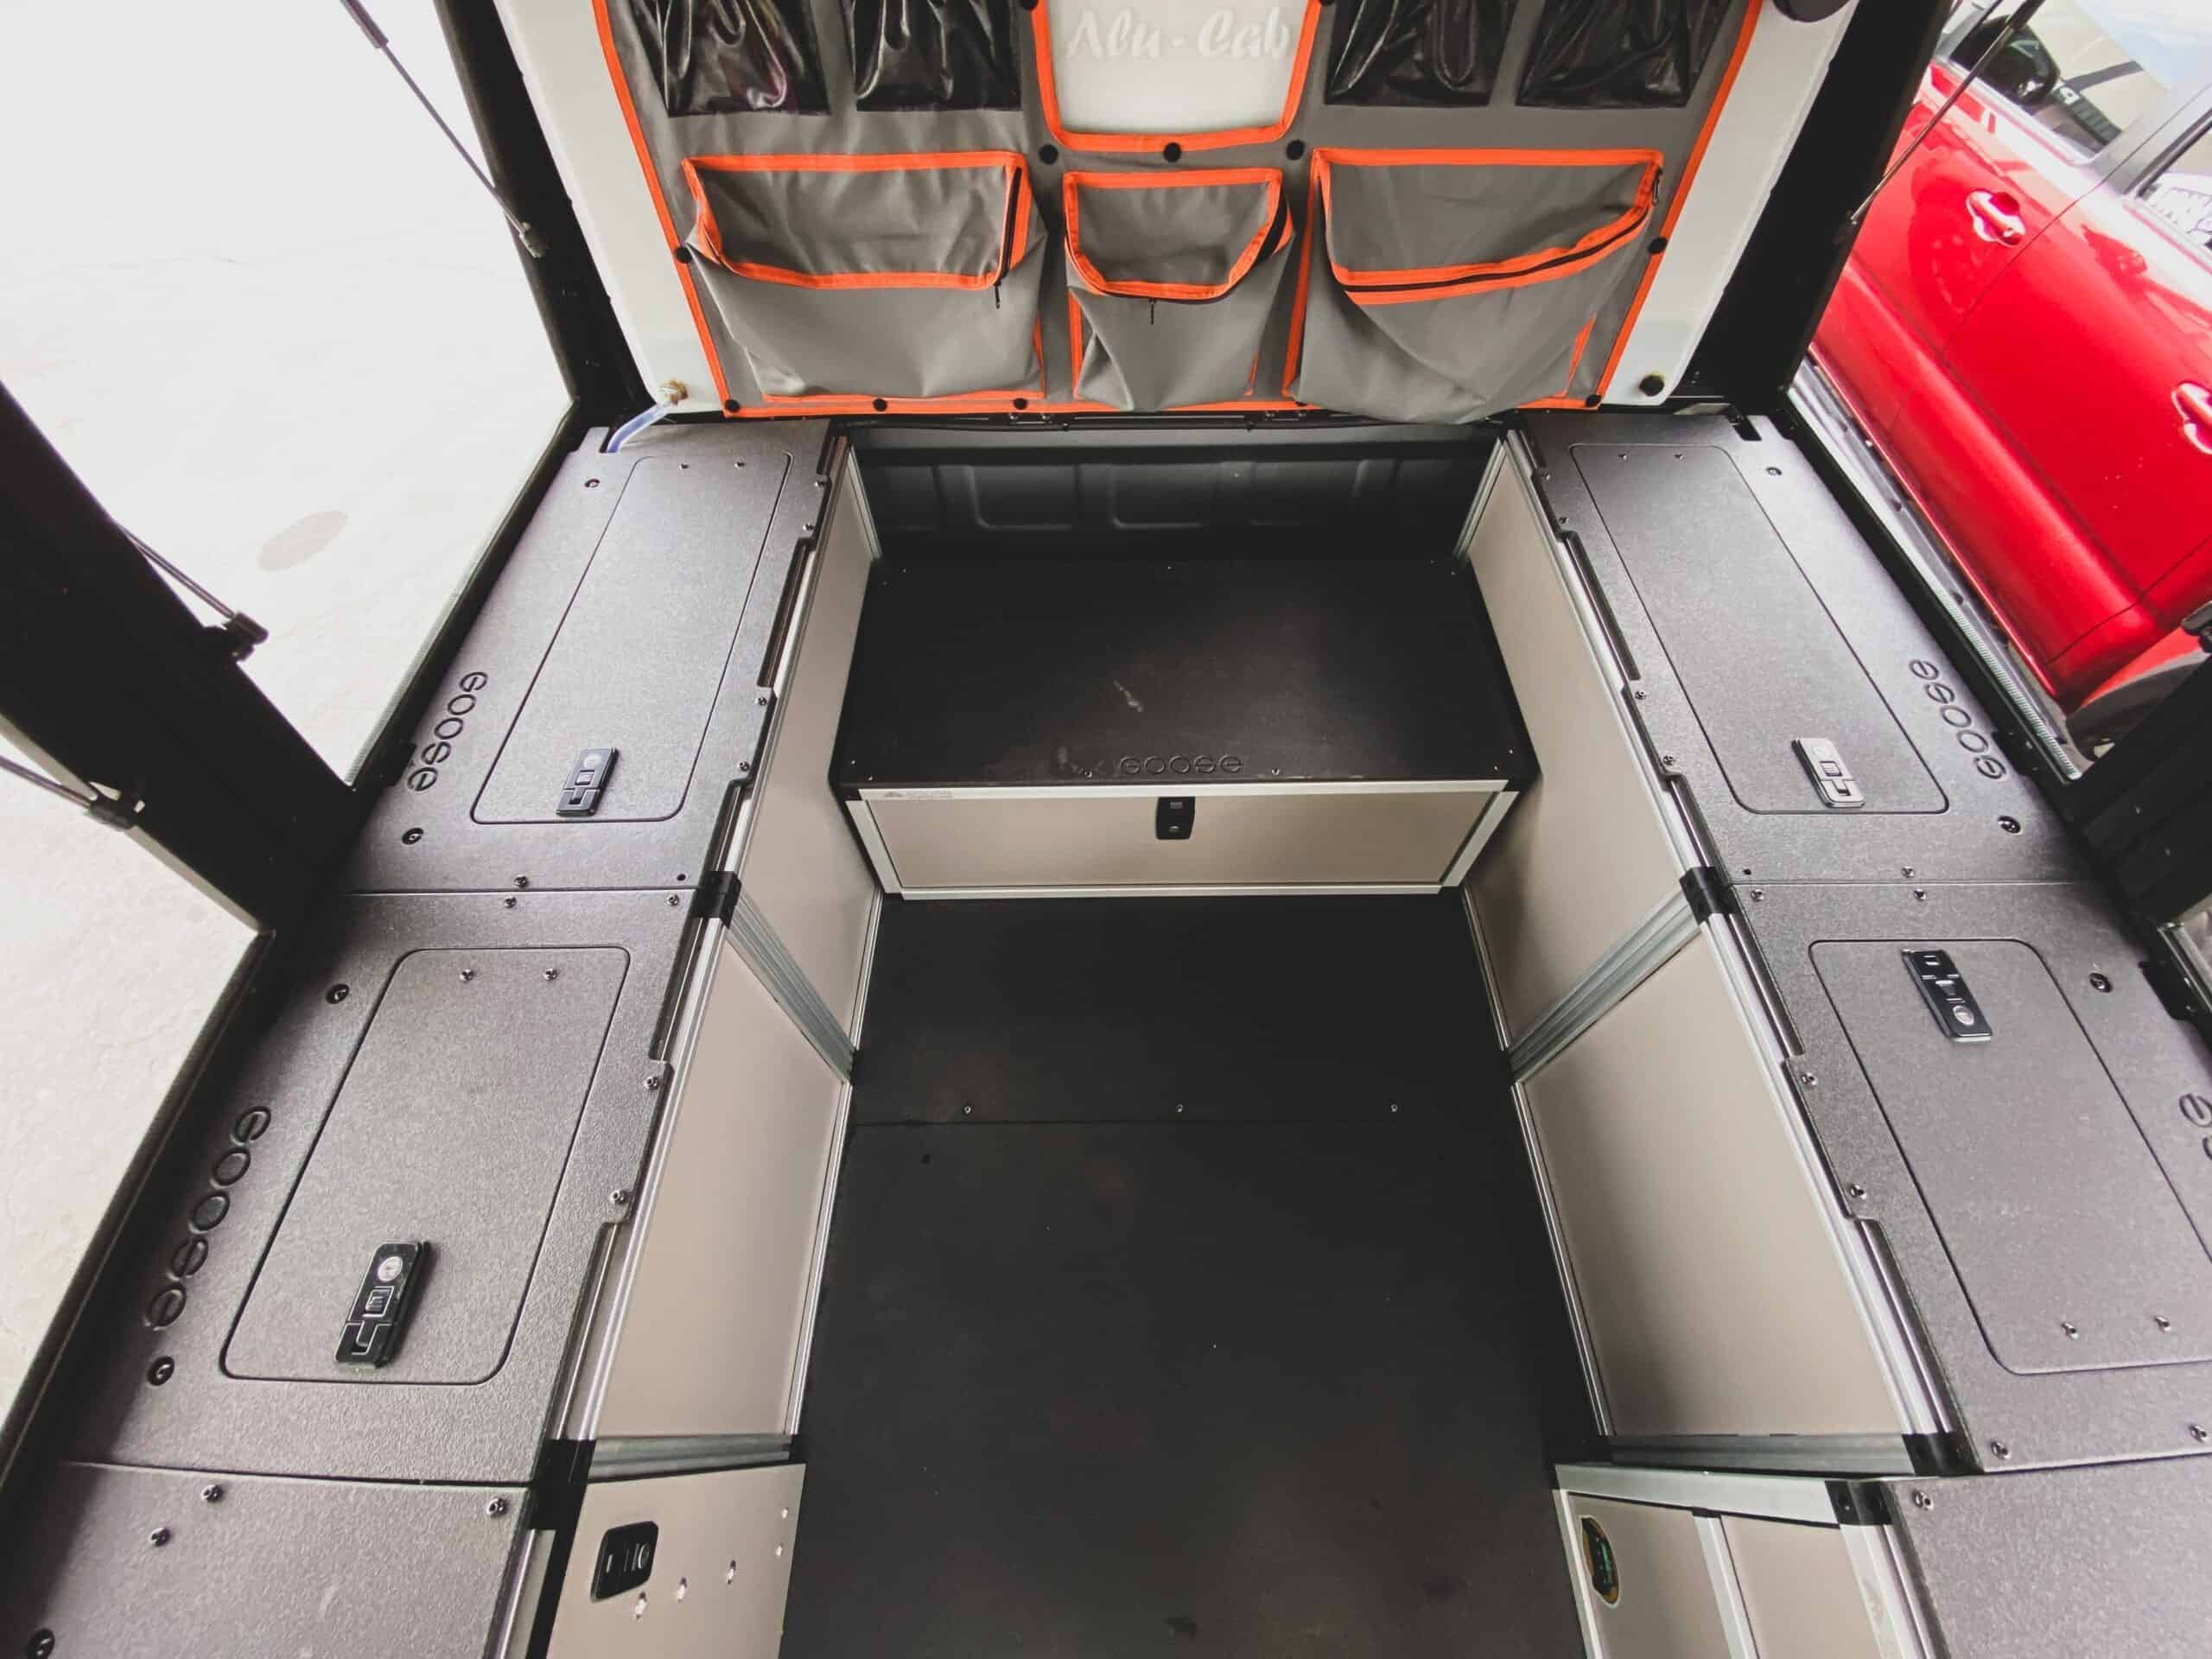 Alu-Cab Alu-Cabin Canopy Camper - Toyota Tundra 2022-Present 3rd Gen. - Front Utility Module - 6'5" Bed